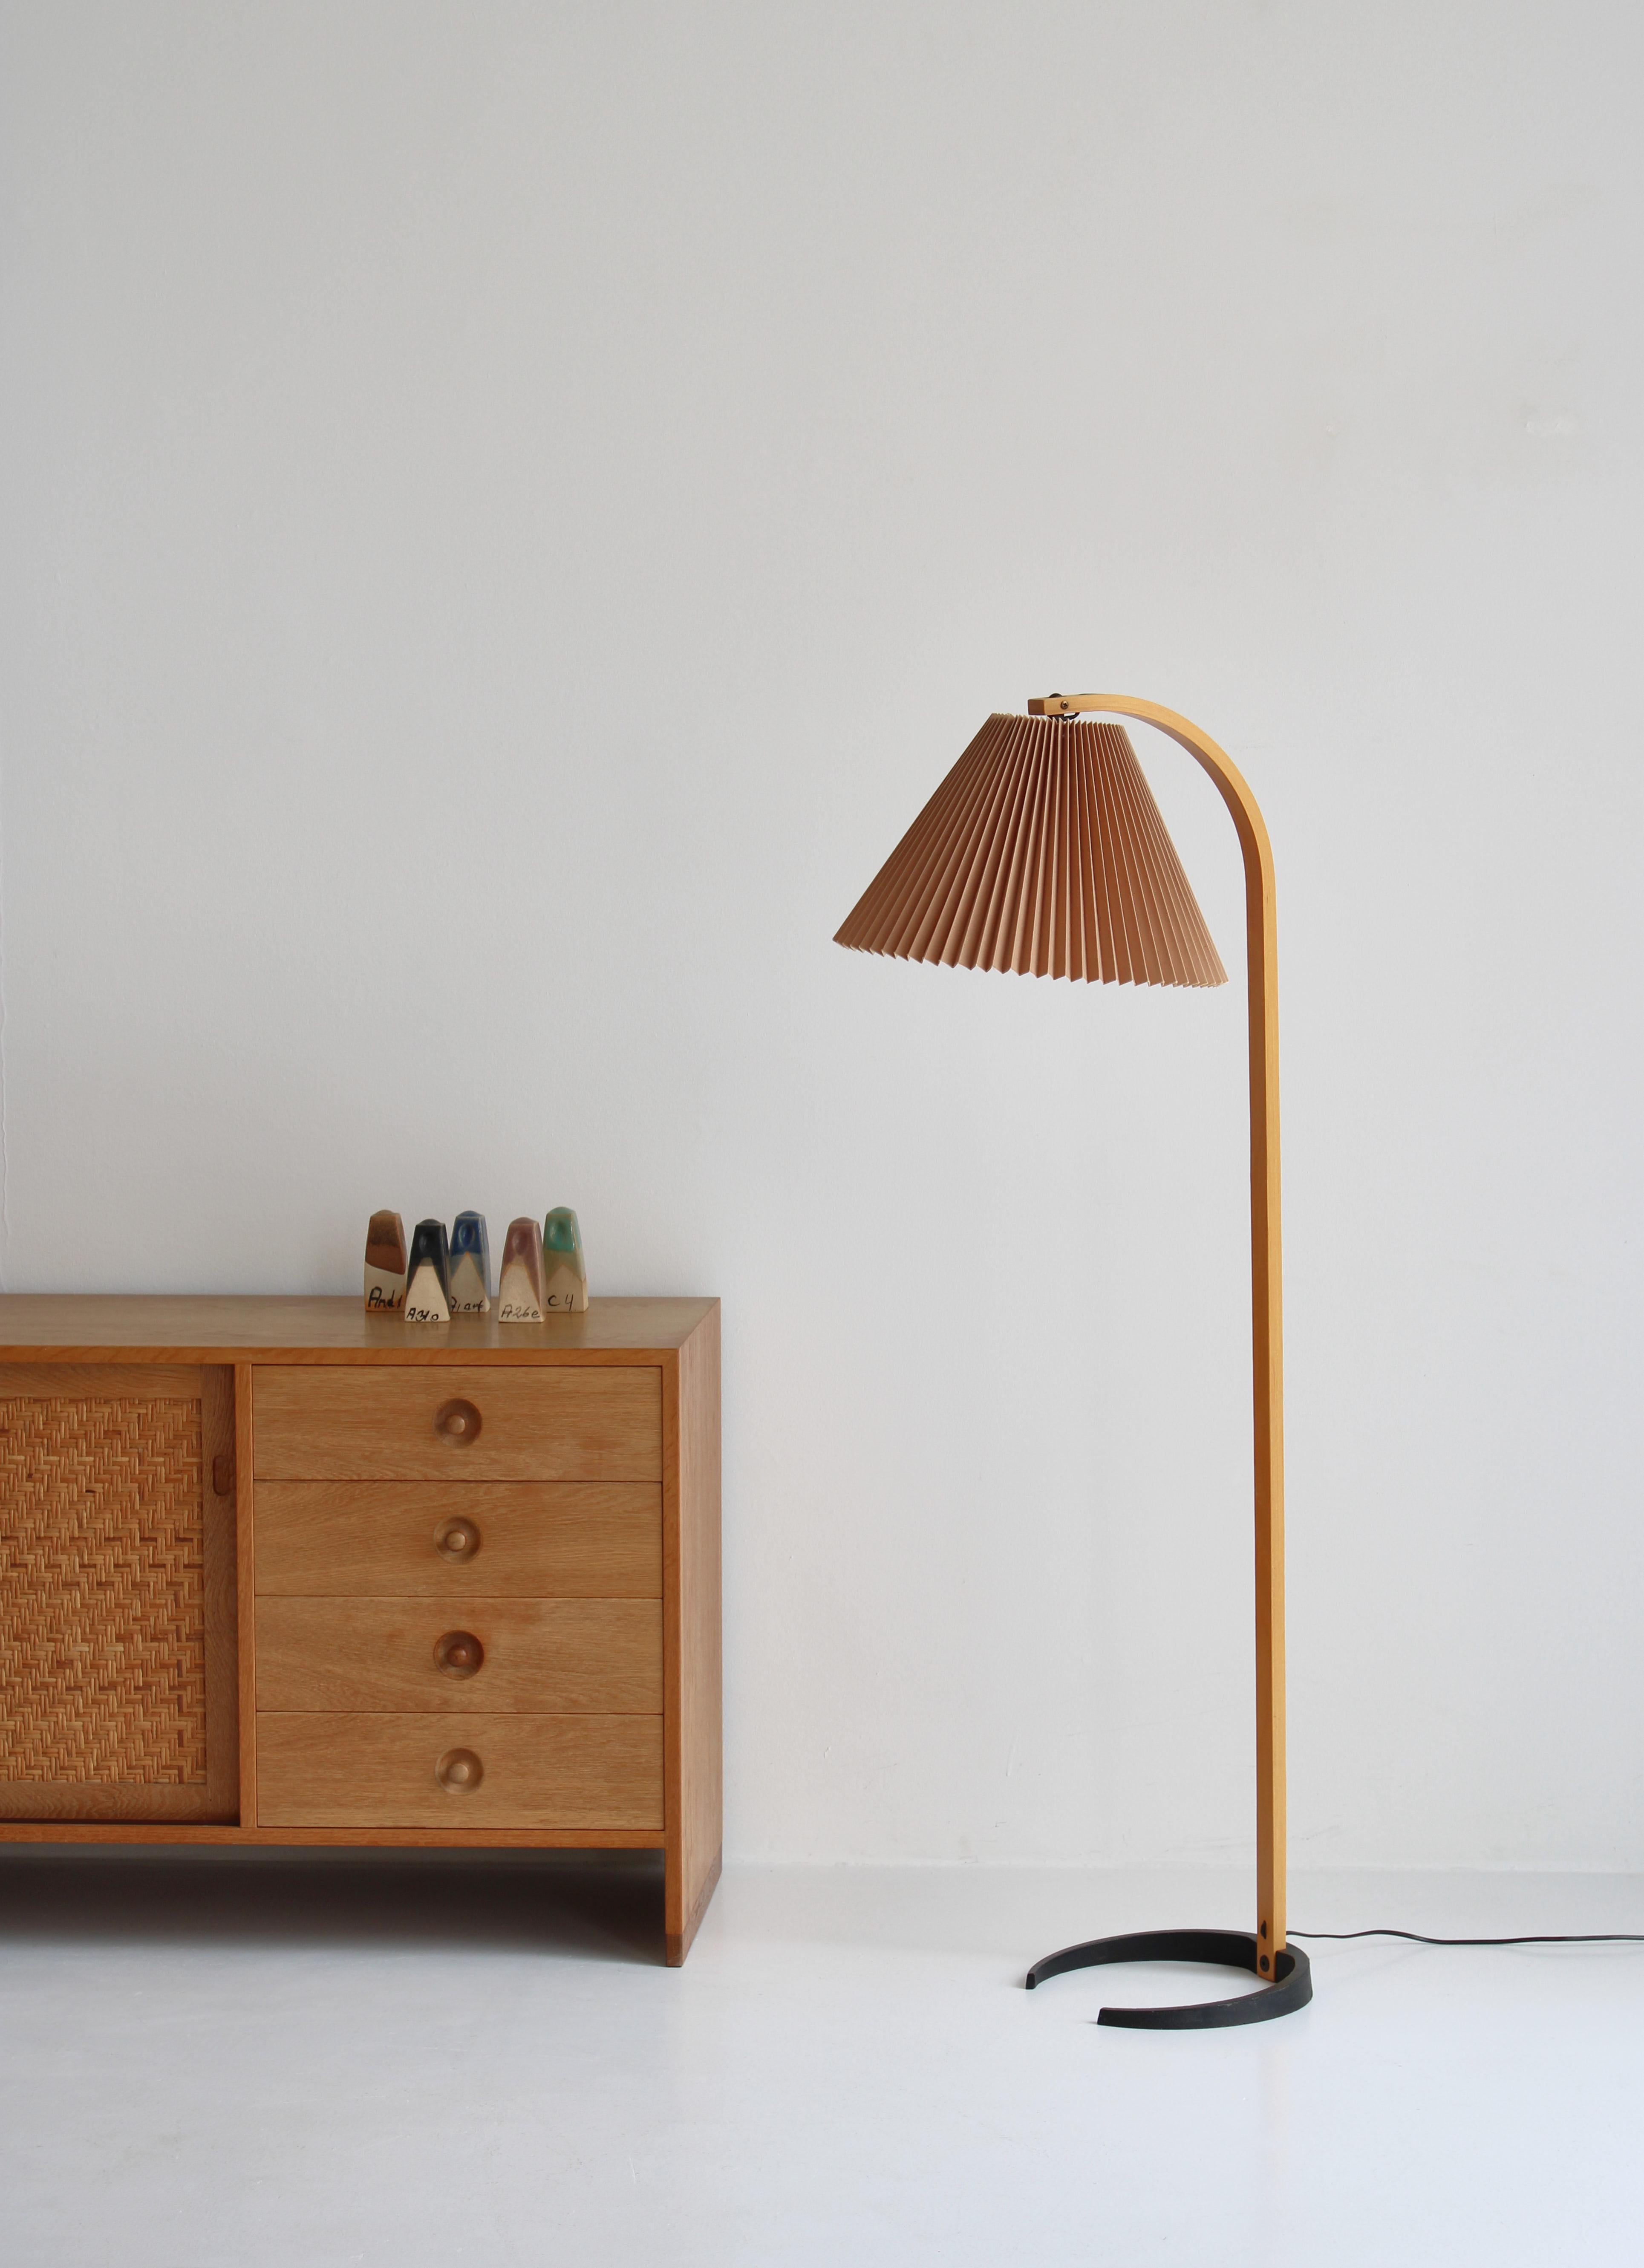 Un lampadaire Caprani Lights original conçu par l'architecte danois Mads Caprani dans les années 1970. Cette lampe vintage présente un pied sculptural en contreplaqué plié avec une courbe élégante, une base en forme de croissant en fonte et un